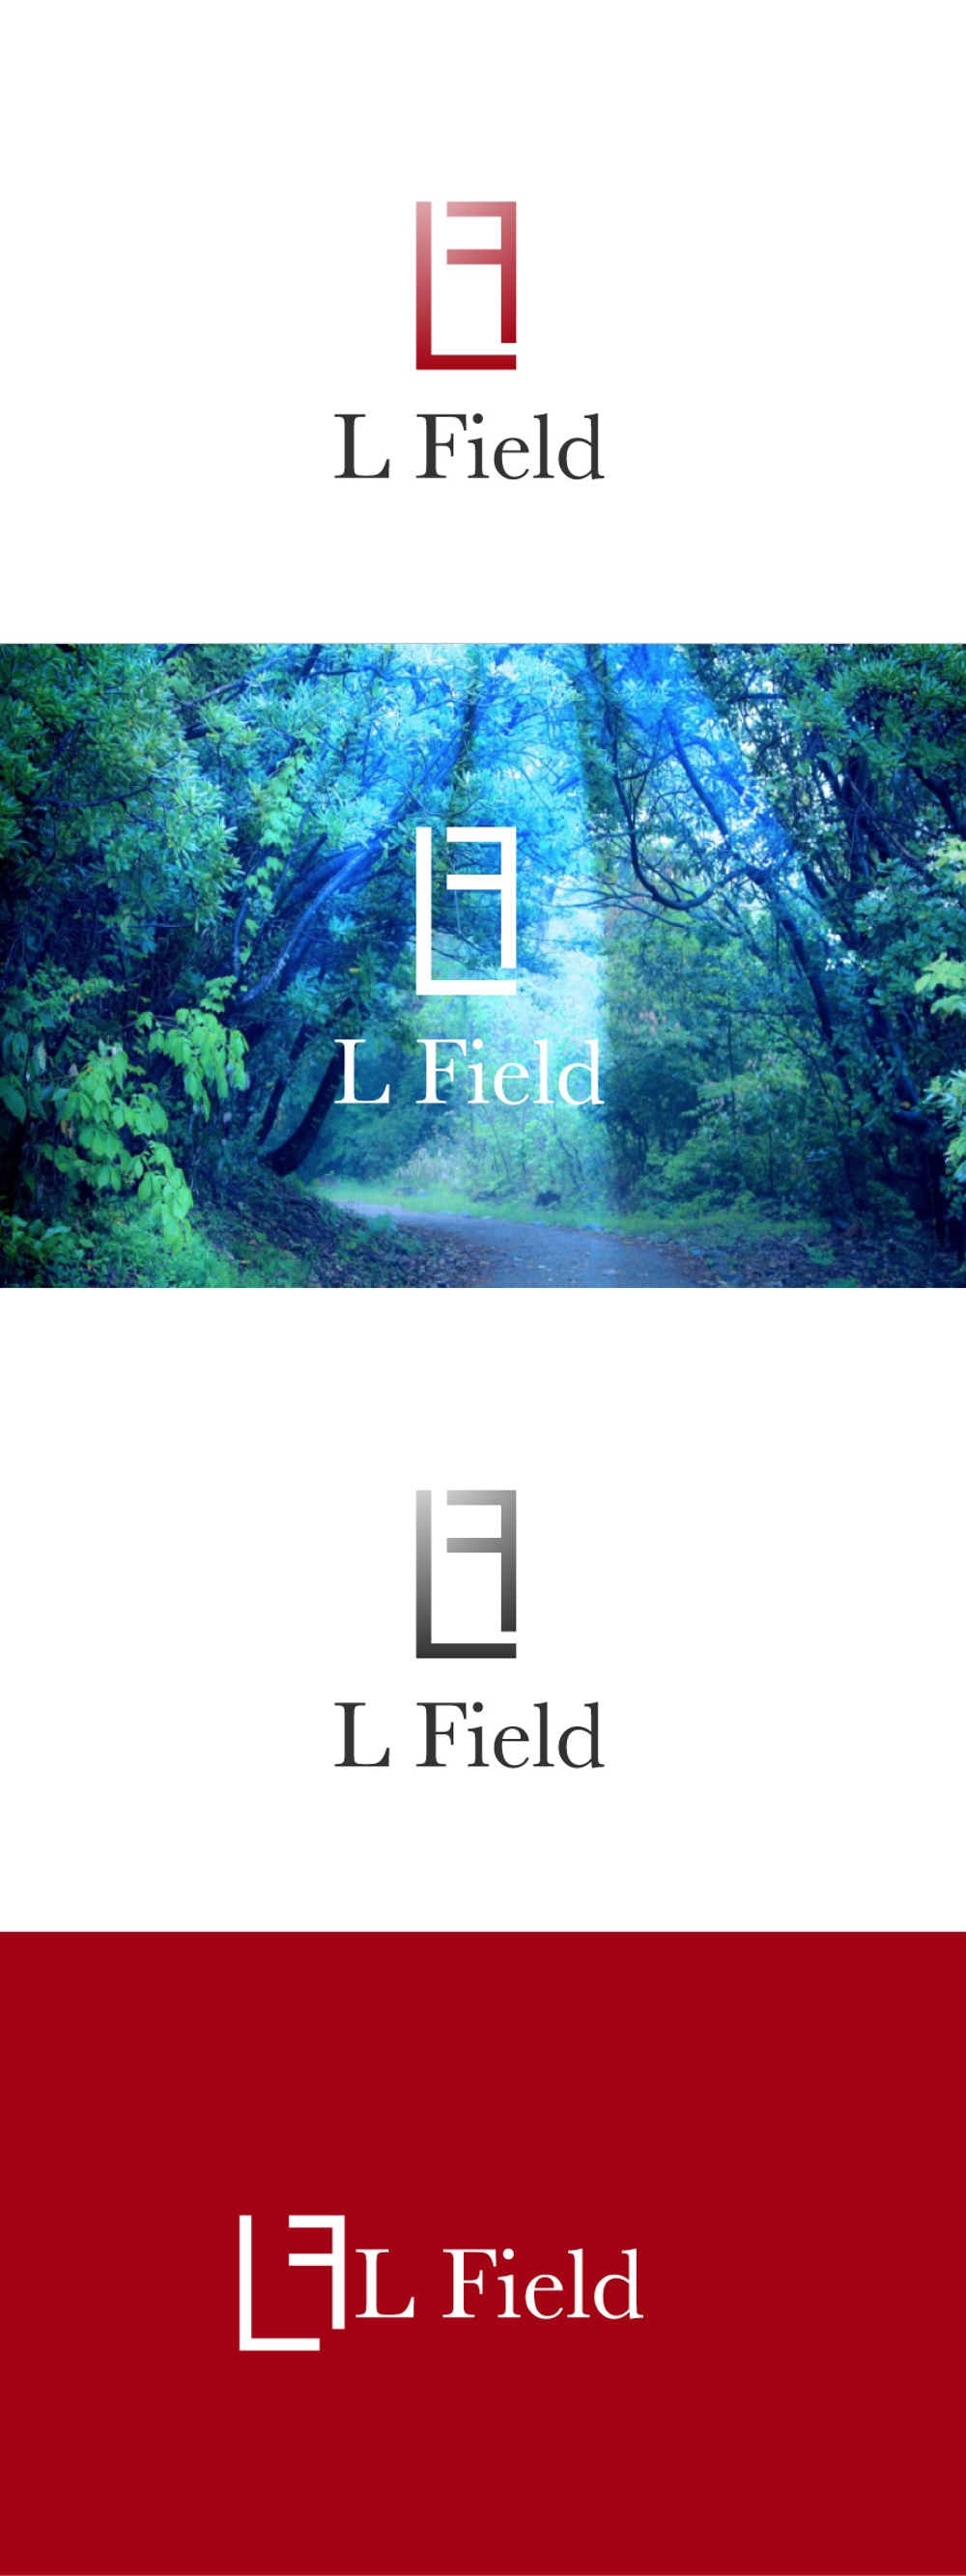 L-Field-02.jpg